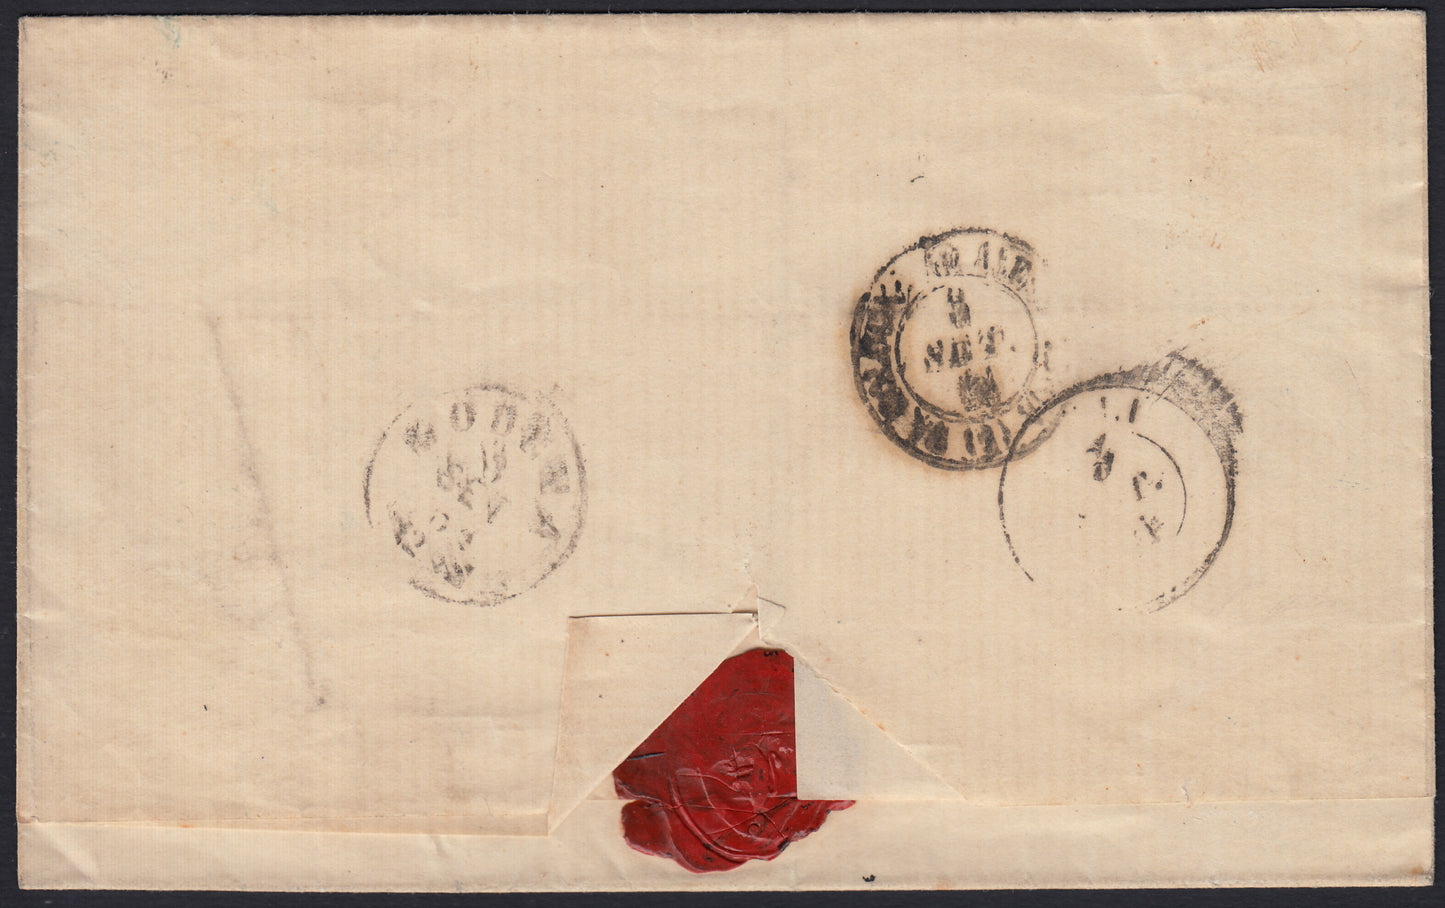 234- 1861 - IV emissione, Lettera spedita da Cesena per Modena 2/11/61 affrancata con c. 40 rosso carminio tiratura 1861 (16D, Rattone n. 41a)